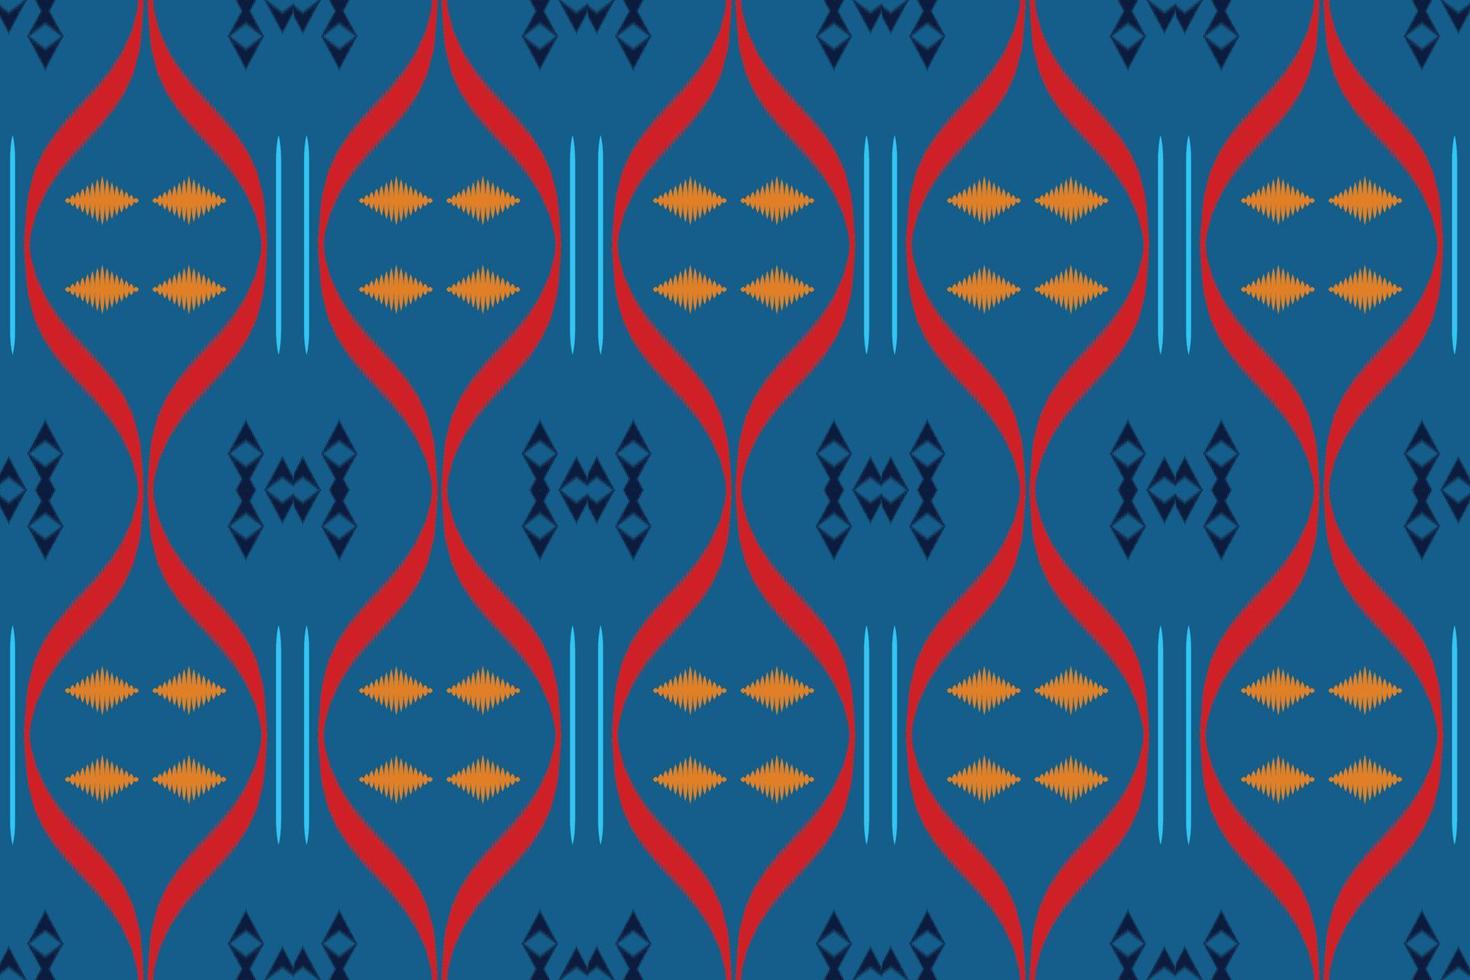 motiv ikat damast tribal abstrakt borneo skandinavisch batik böhmische textur digitales vektordesign für druck saree kurti stoffpinsel symbole muster vektor